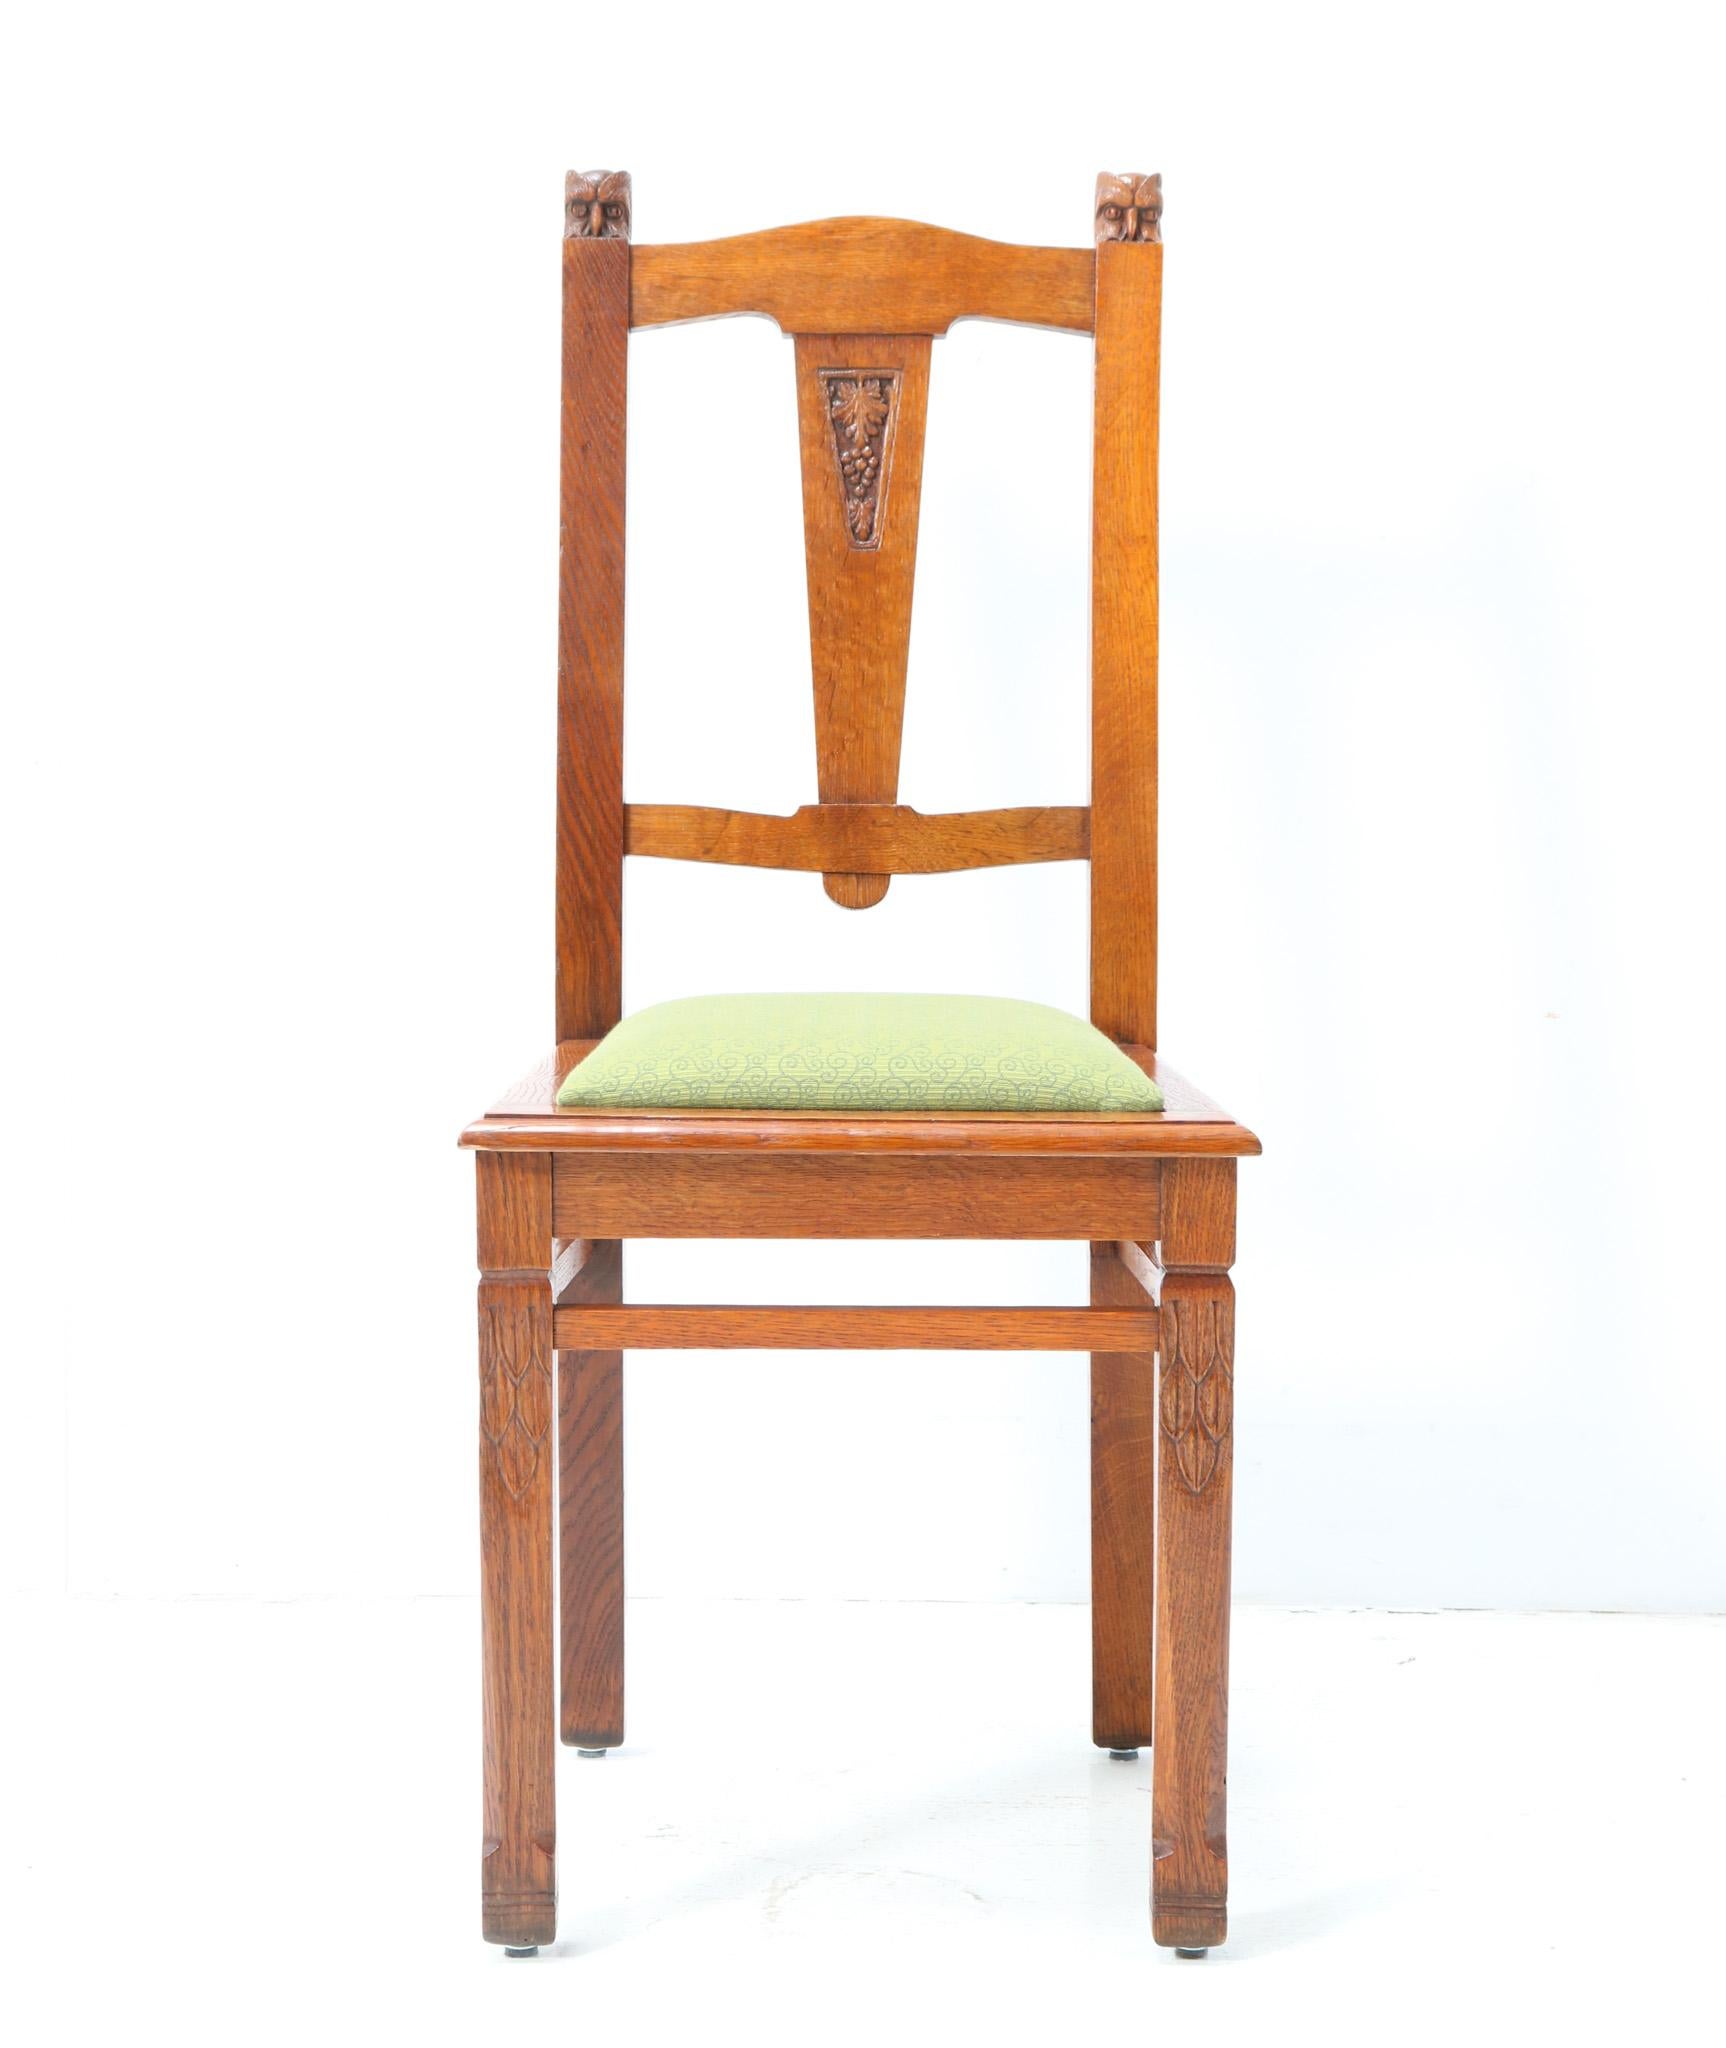 Prächtiger und seltener Arts & Crafts Jugendstil Beistellstuhl.
Design von Kobus de Graaff, einem berühmten niederländischen Künstler, Möbelhersteller und Bildhauer.
Auffälliges niederländisches Design aus den 1900er Jahren.
Massiver Eichenrahmen